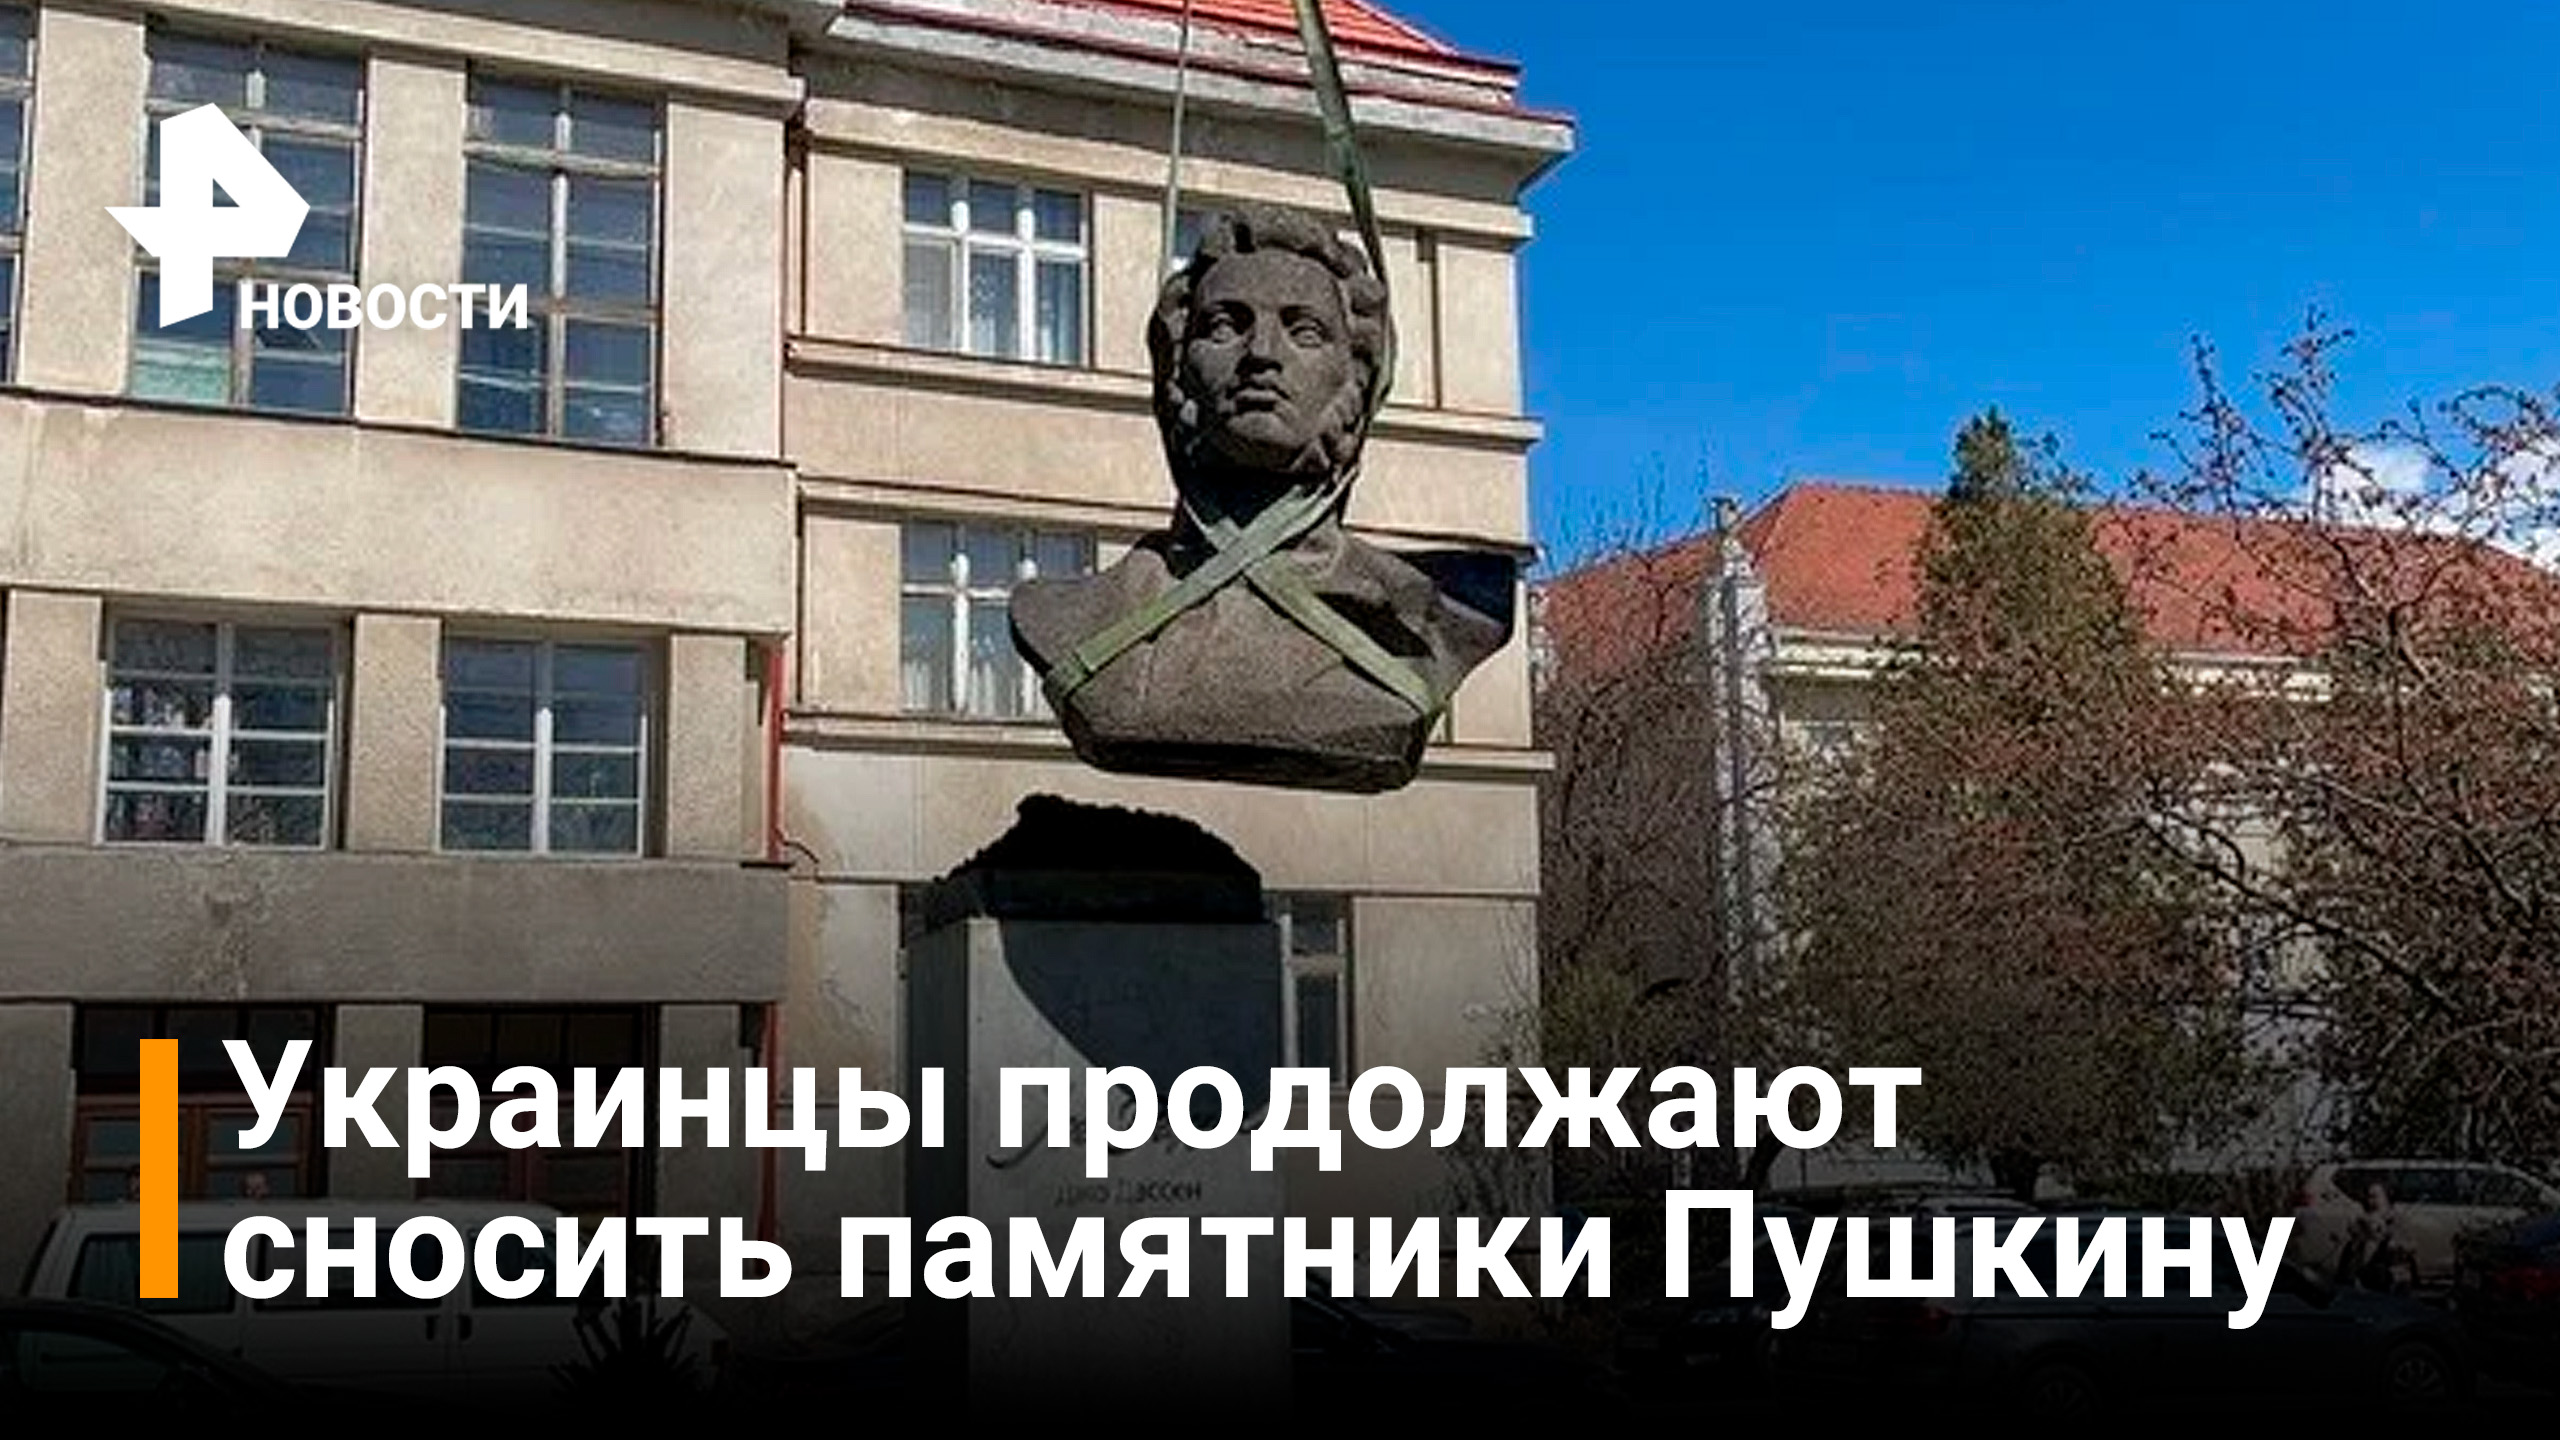 Памятник Пушкину снесли на западе Украины — третий за неделю / РЕН Новости